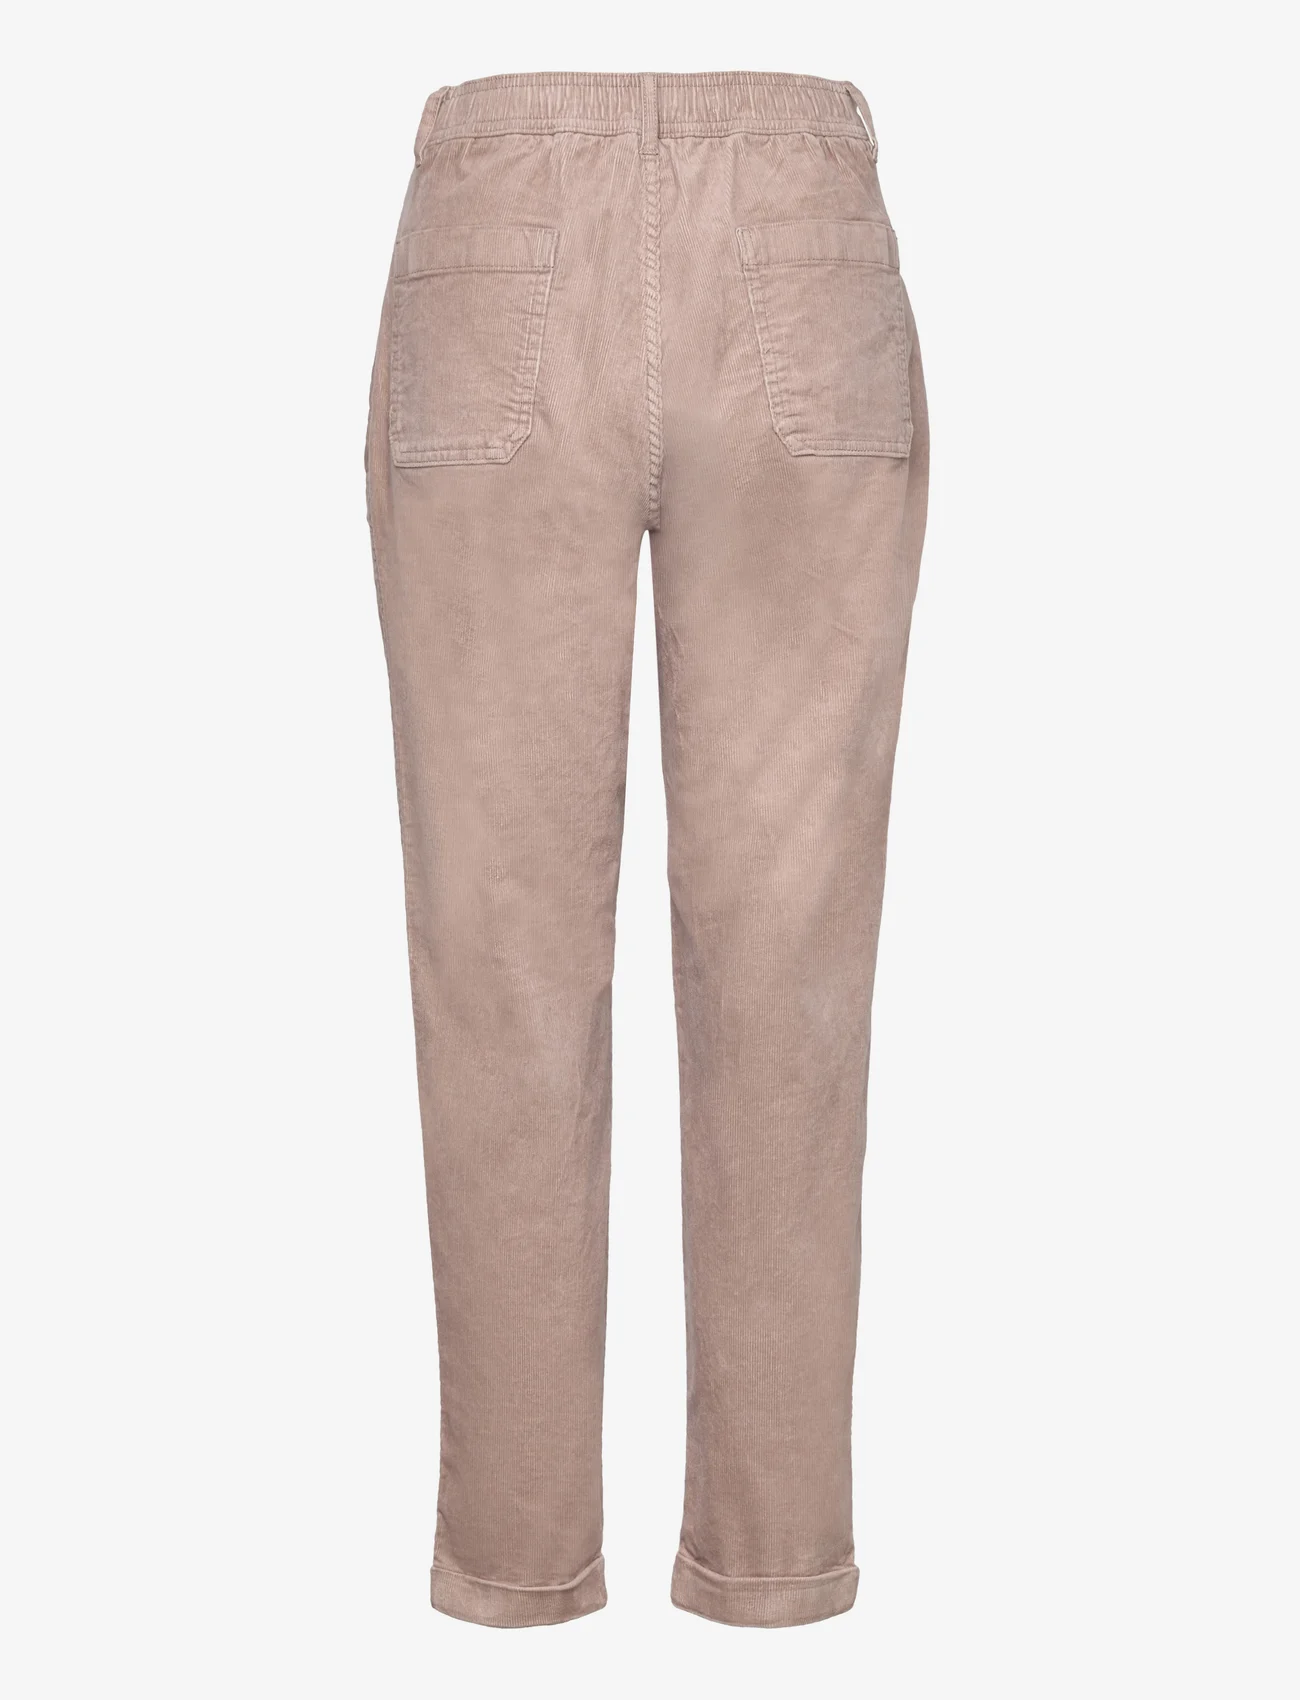 Esprit Casual - Pants woven - spodnie proste - light taupe - 1